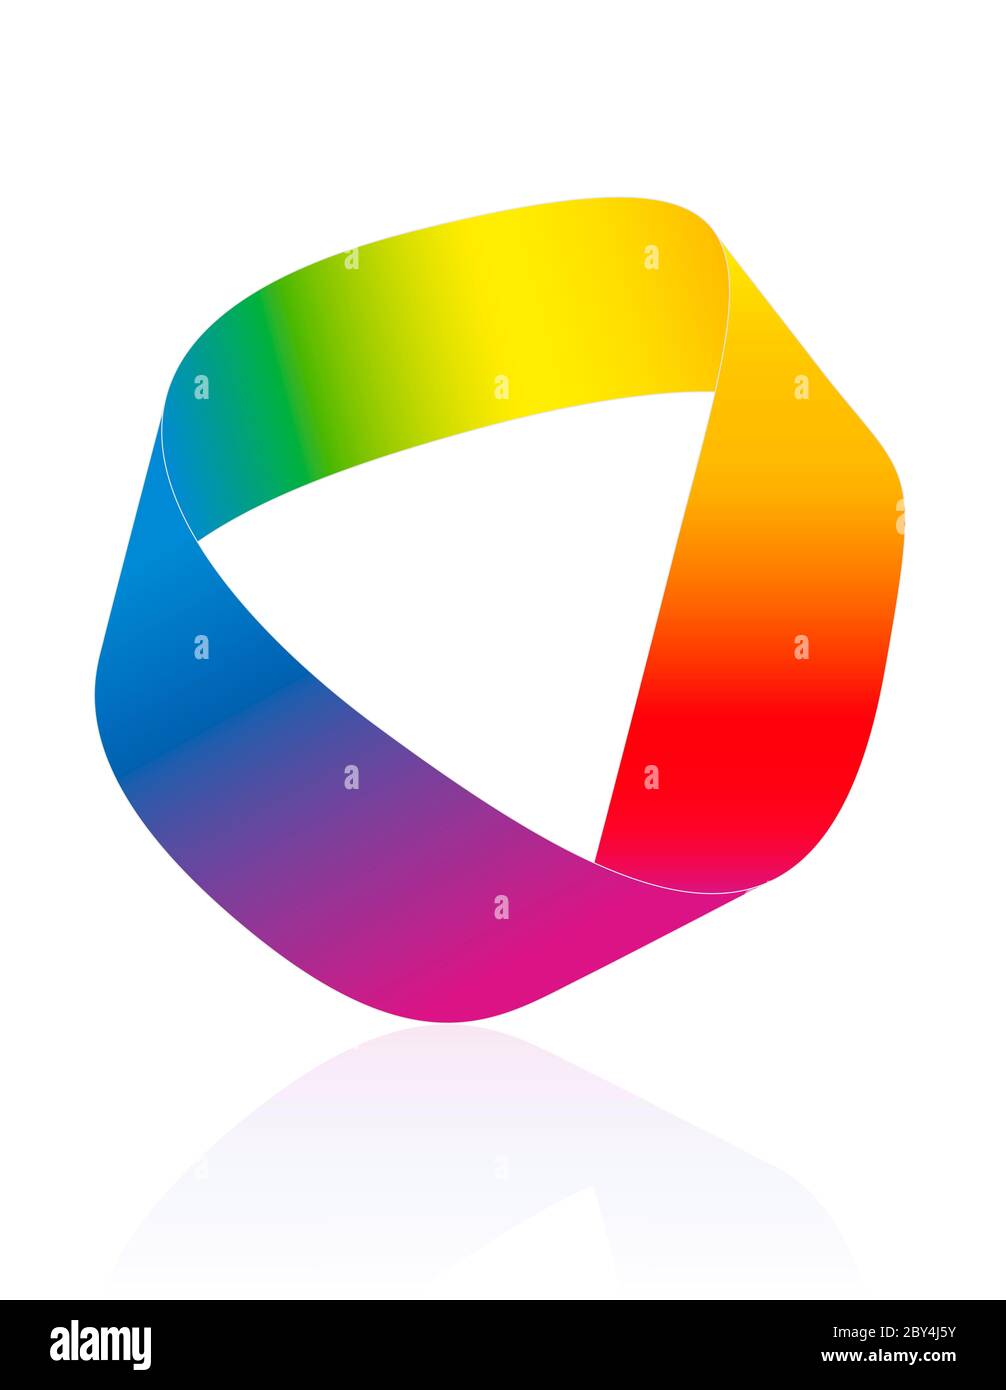 Moebius-Streifen, regenbogenfarbenes Mobius-Band. Fläche mit nur einer Seite und einer Grenze. Mathematisch nicht orientierbar - Symboldarstellung auf weiß. Stockfoto